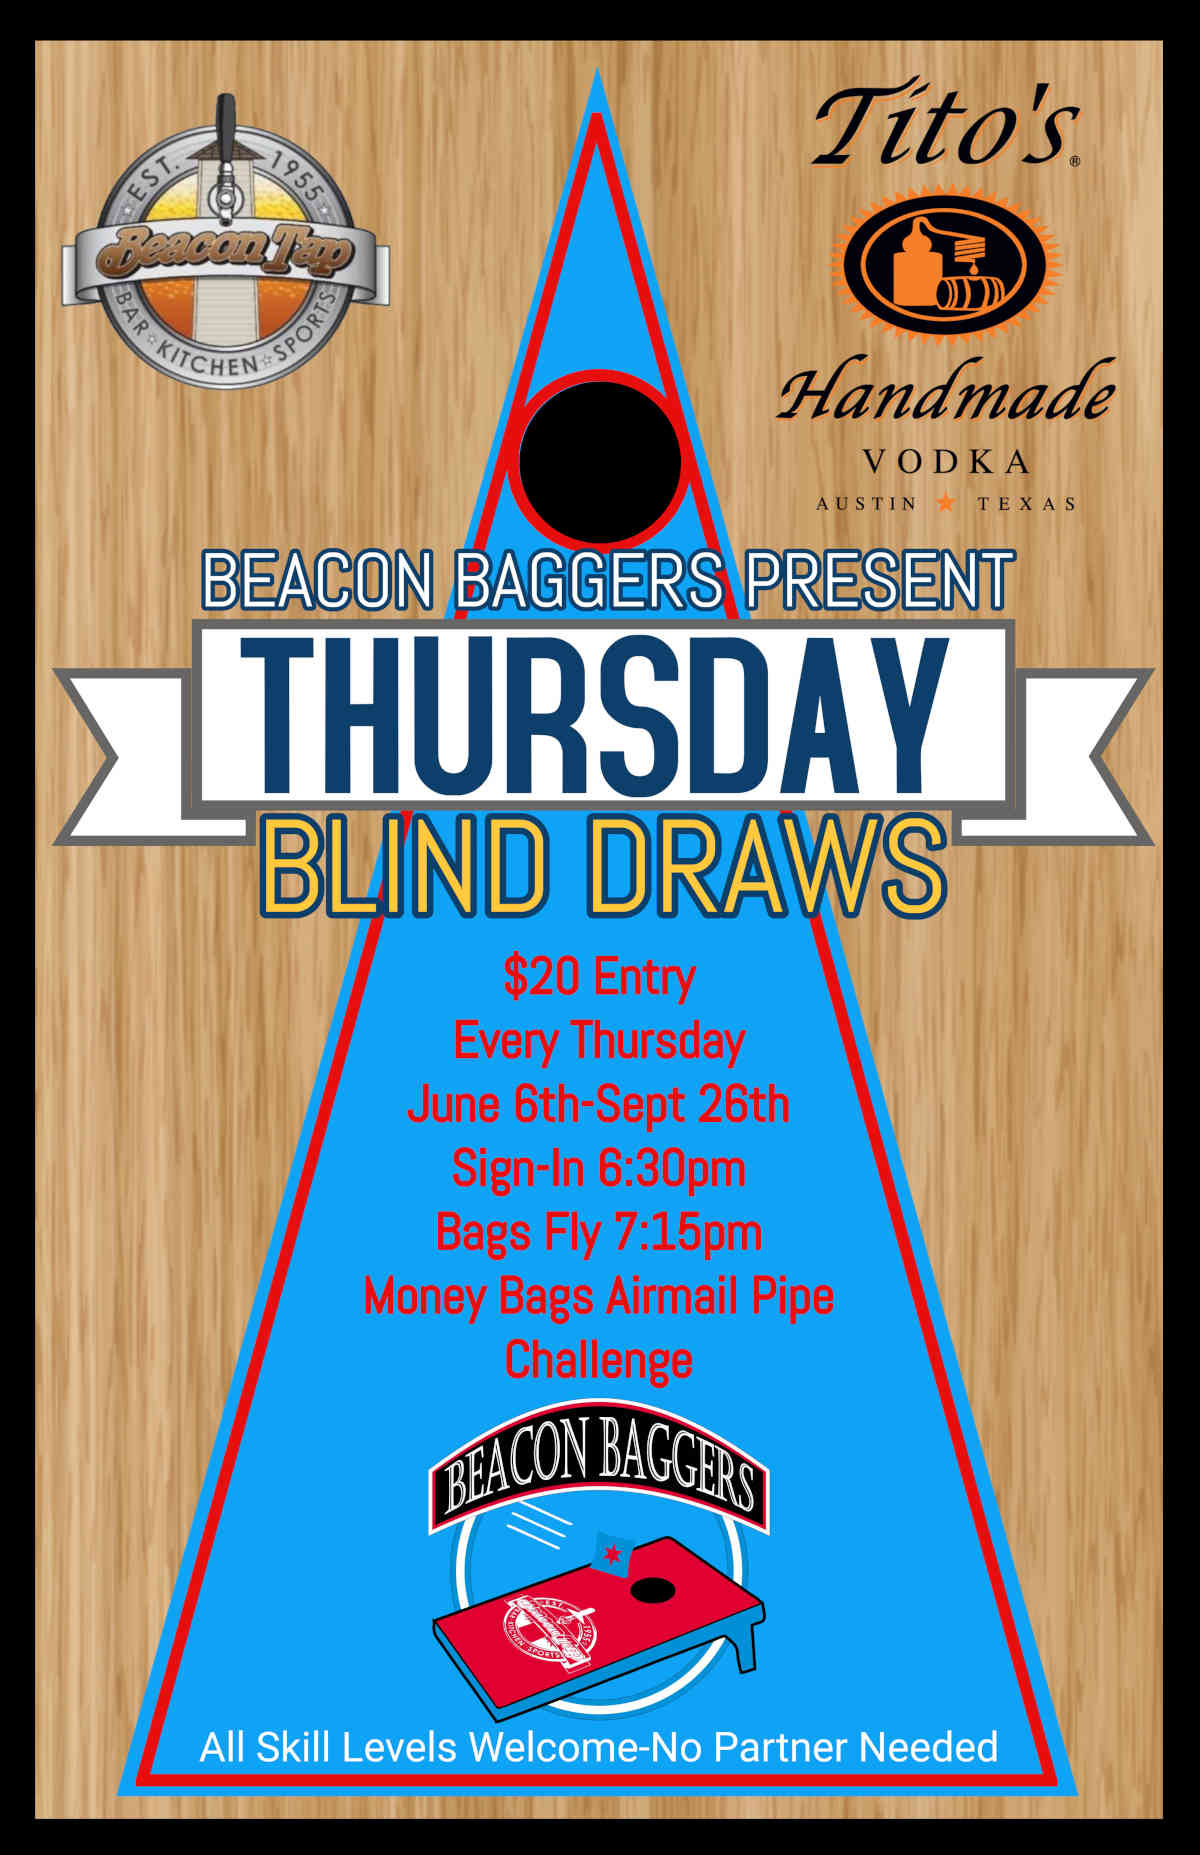 Thursday blind draws flyer